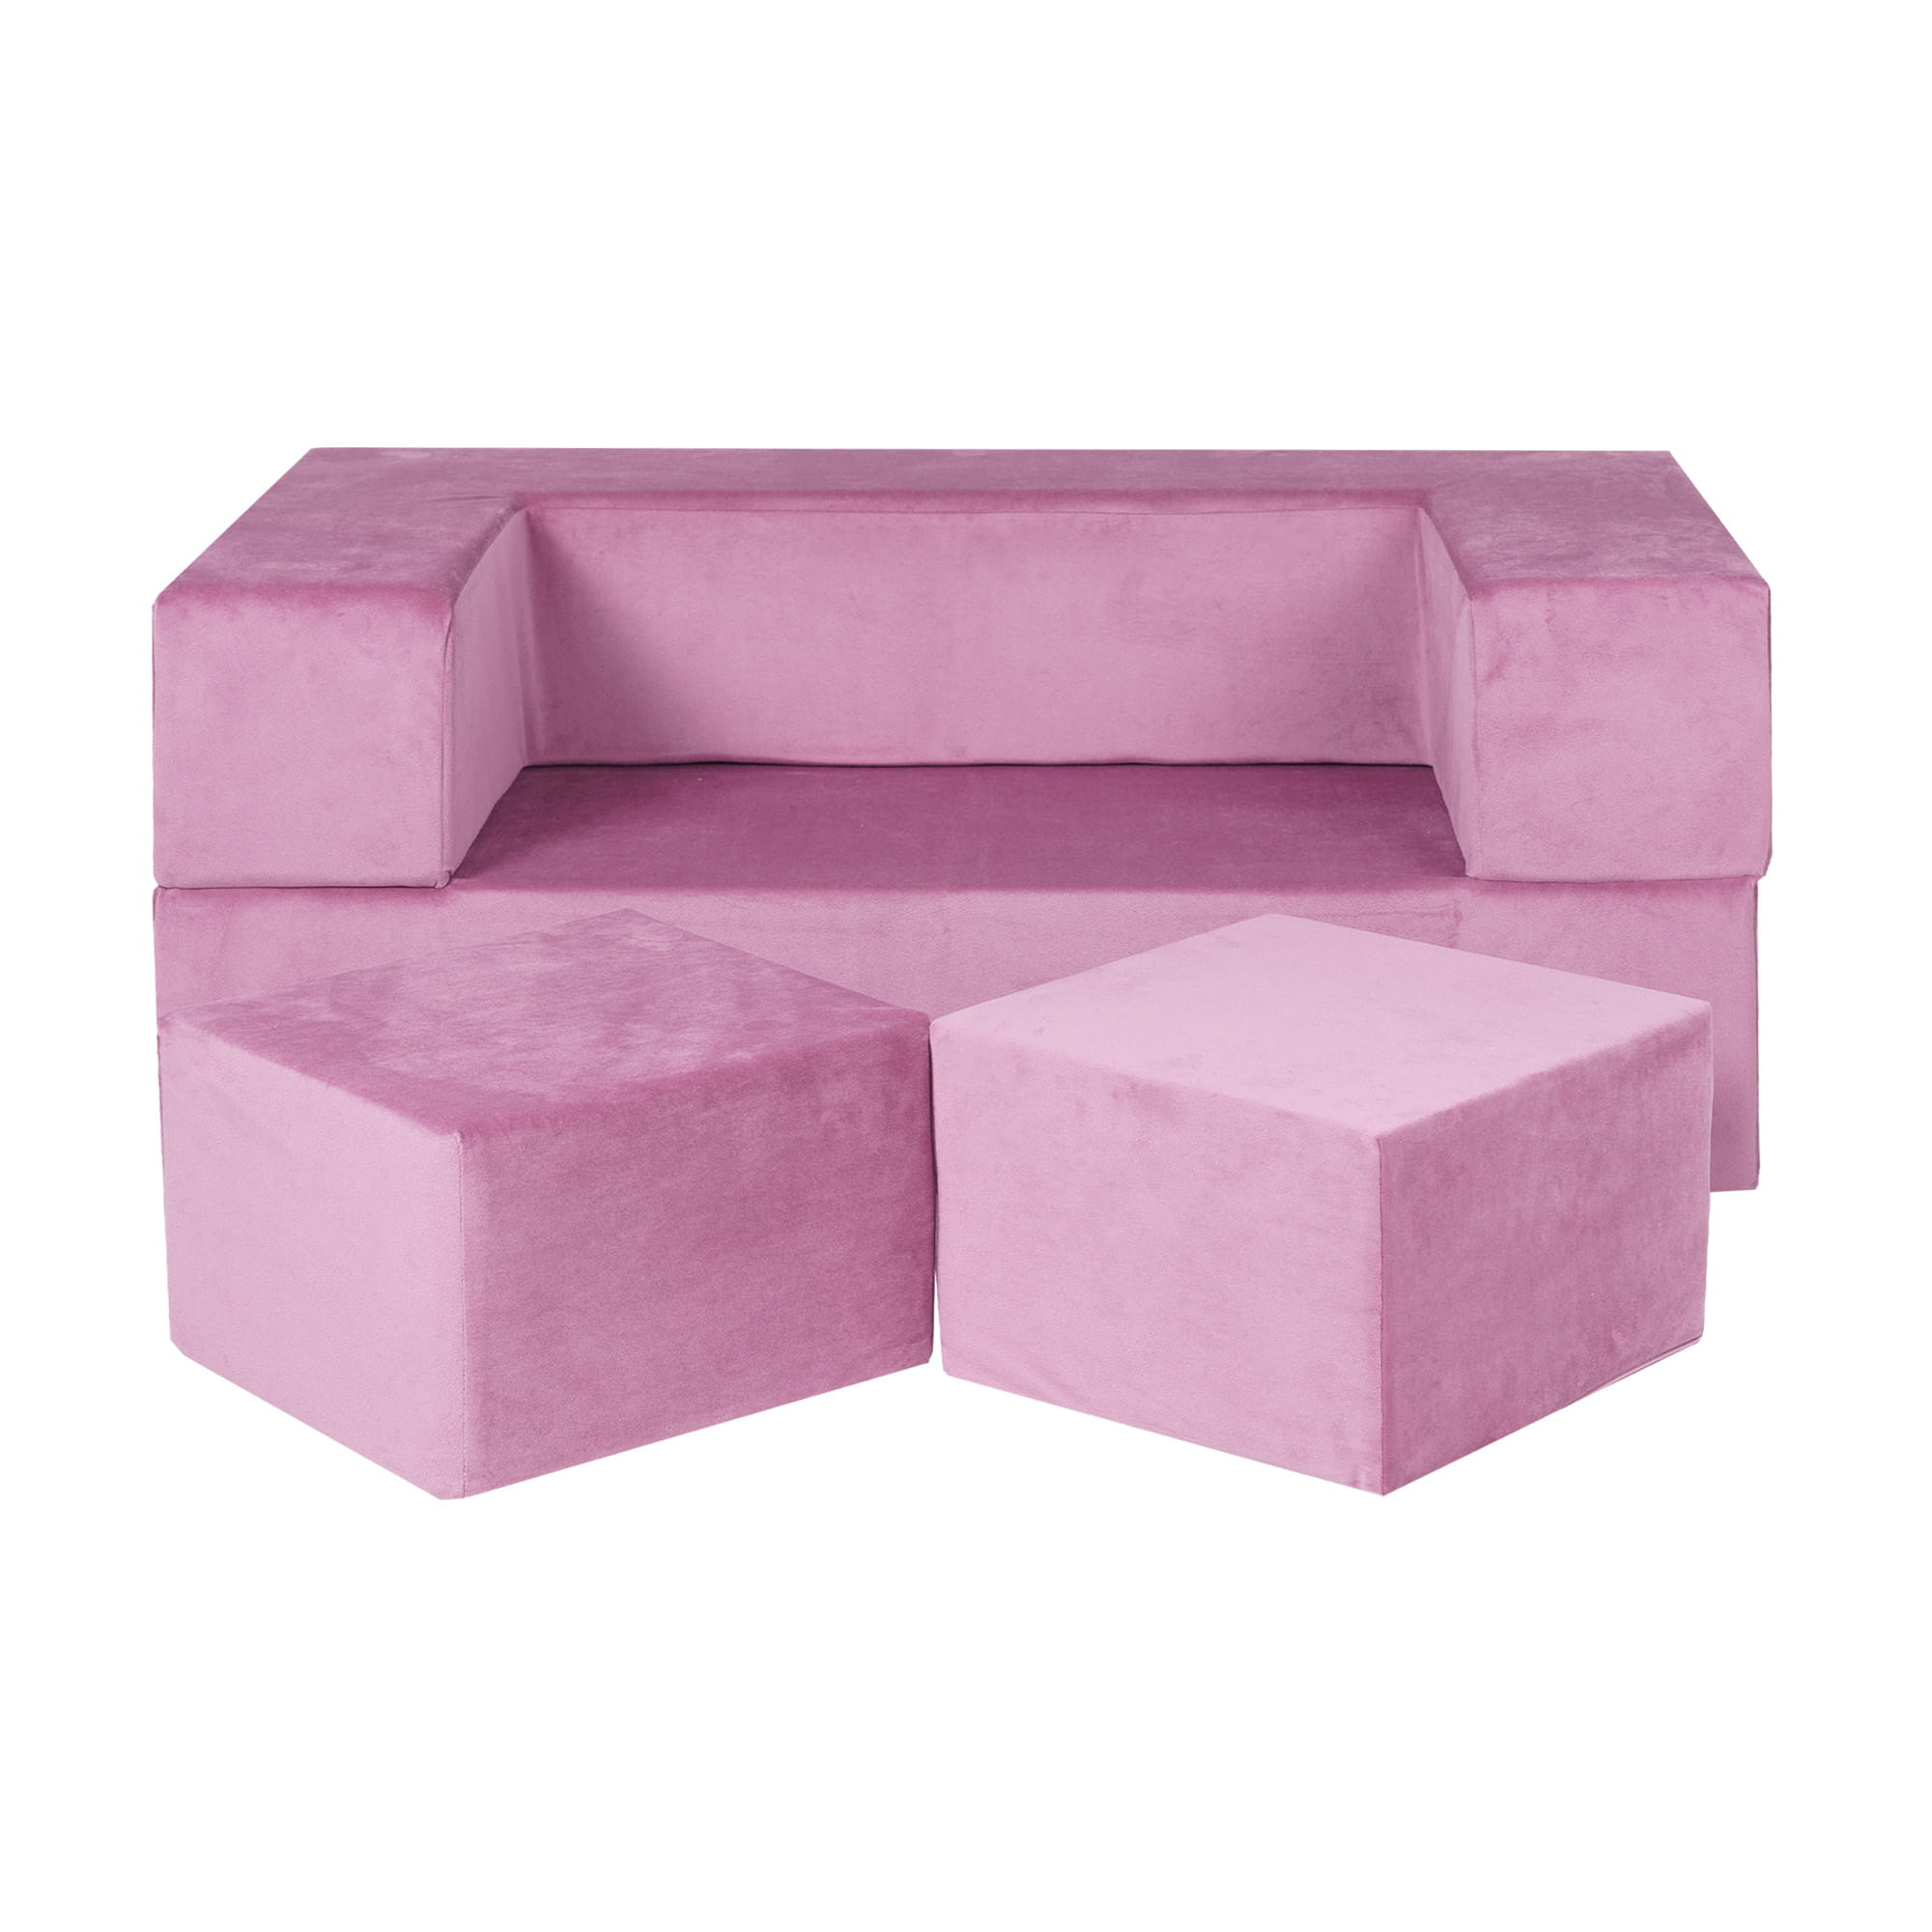 Canapé droit Rose Velours Pas cher Design Confort